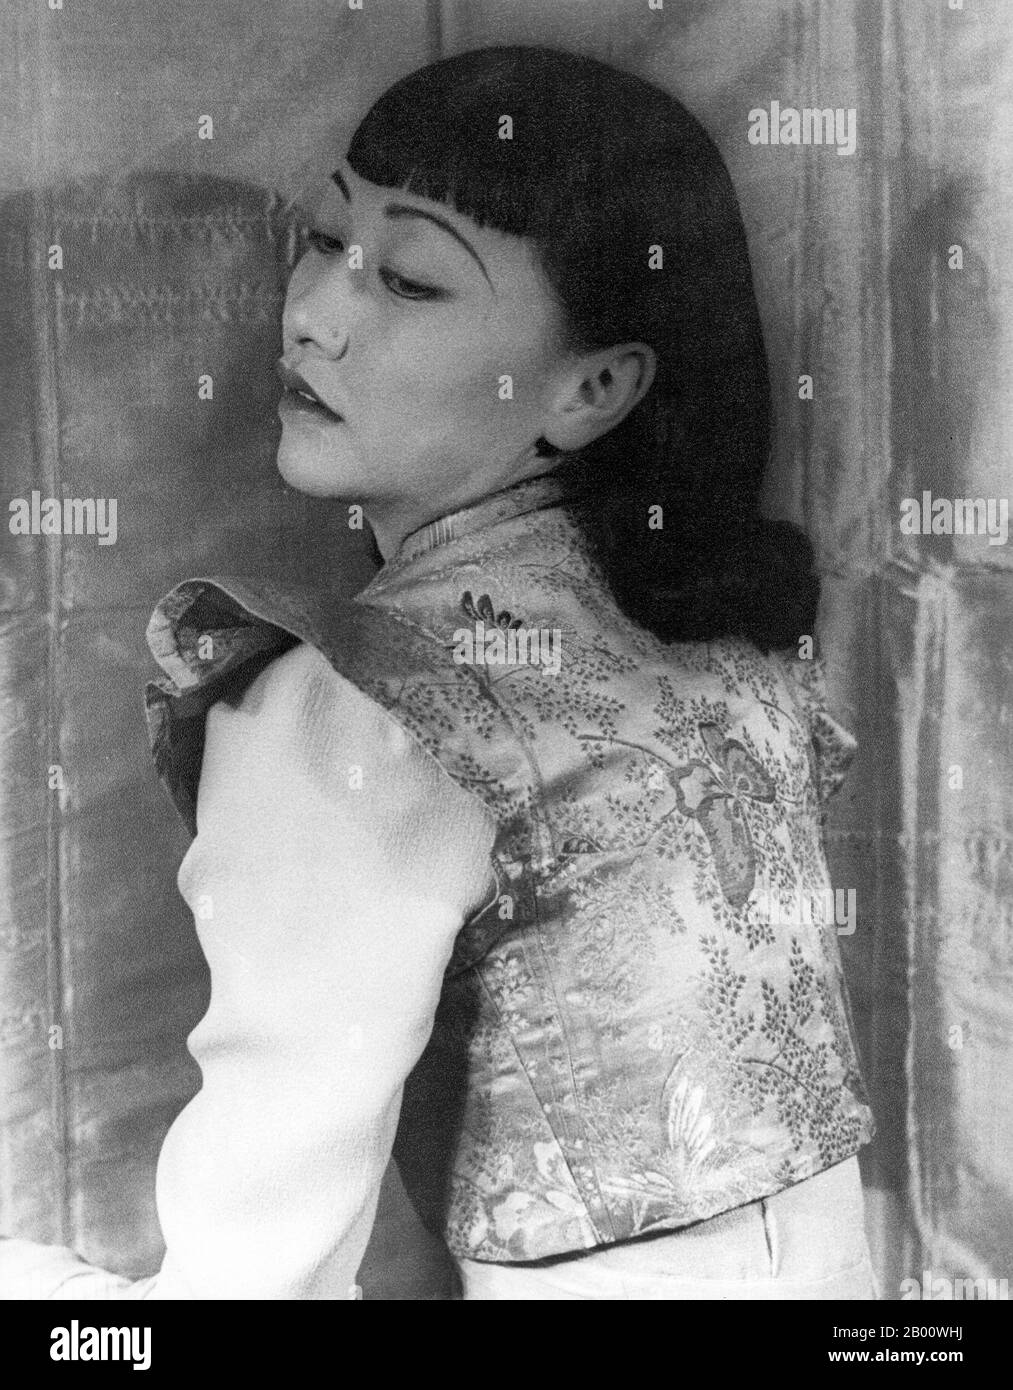 USA: Anna May Wong fotografiert von Carl Van Vechten (1880-1964), 25. April 1939. Anna May Wong (3. Januar 1905 – 3. Februar 1961) war eine amerikanische Schauspielerin, der erste chinesisch-amerikanische Filmstar und die erste asiatische Amerikanerin, die ein internationaler Star wurde. Ihre lange und abwechslungsreiche Karriere umfasste sowohl Stummfilm als auch Tonfilm, Fernsehen, Bühne und Radio. Stockfoto